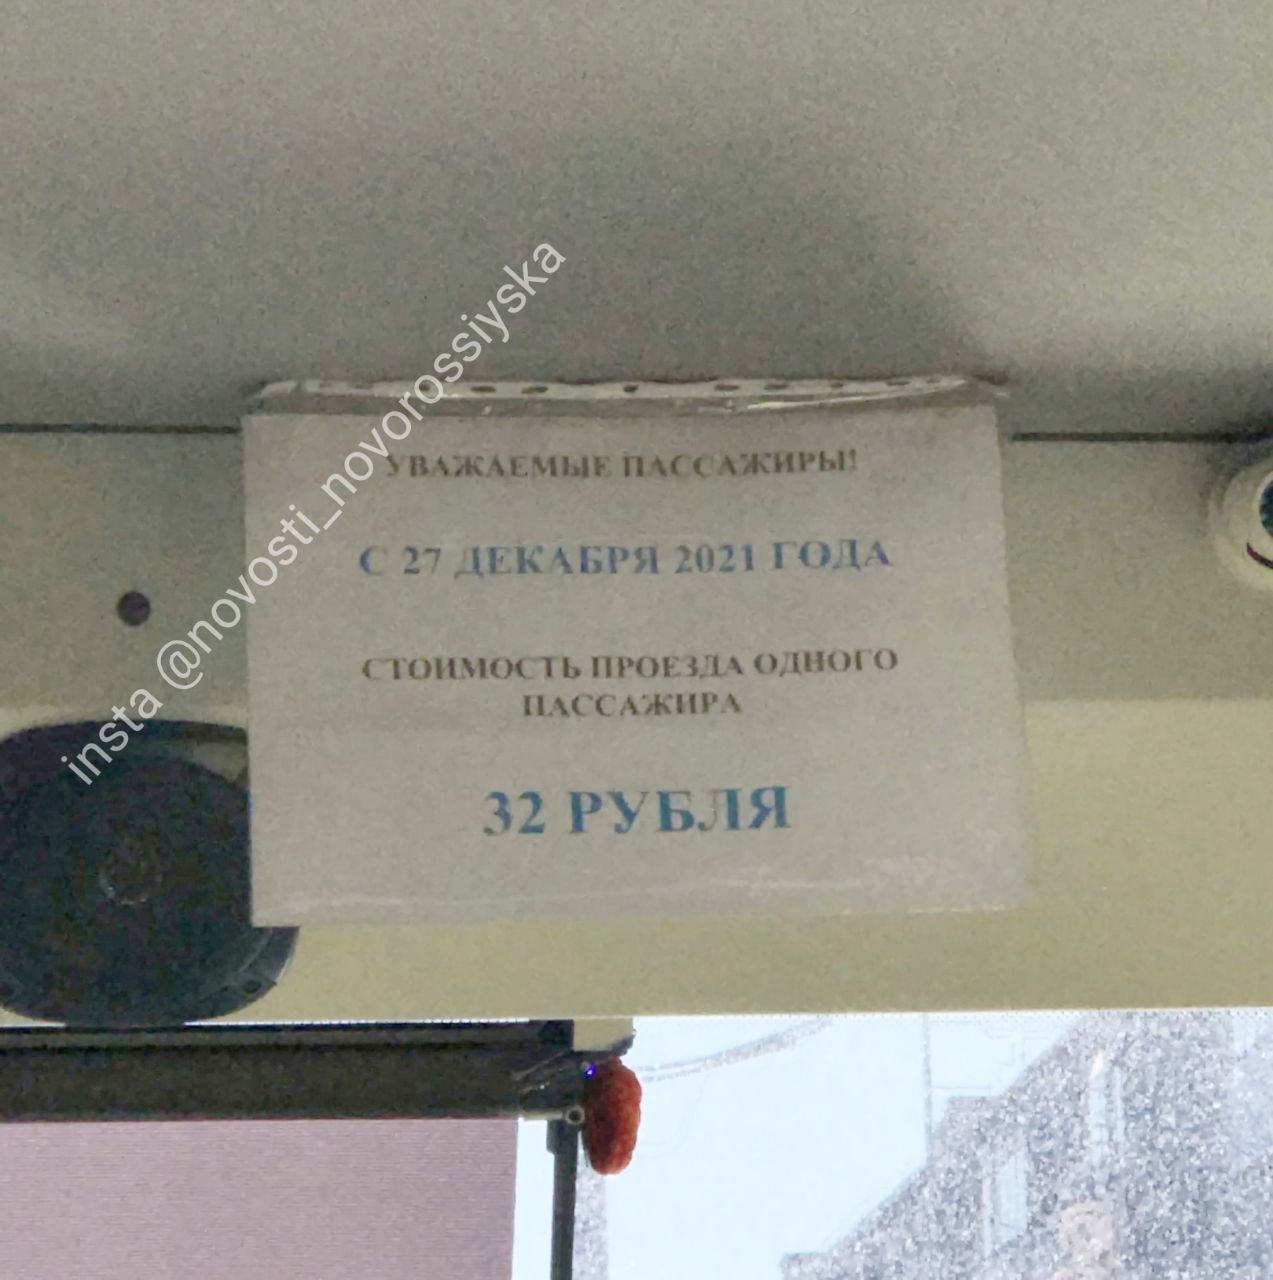 В Новороссийске стоимость проезда увеличили на 4 рубля